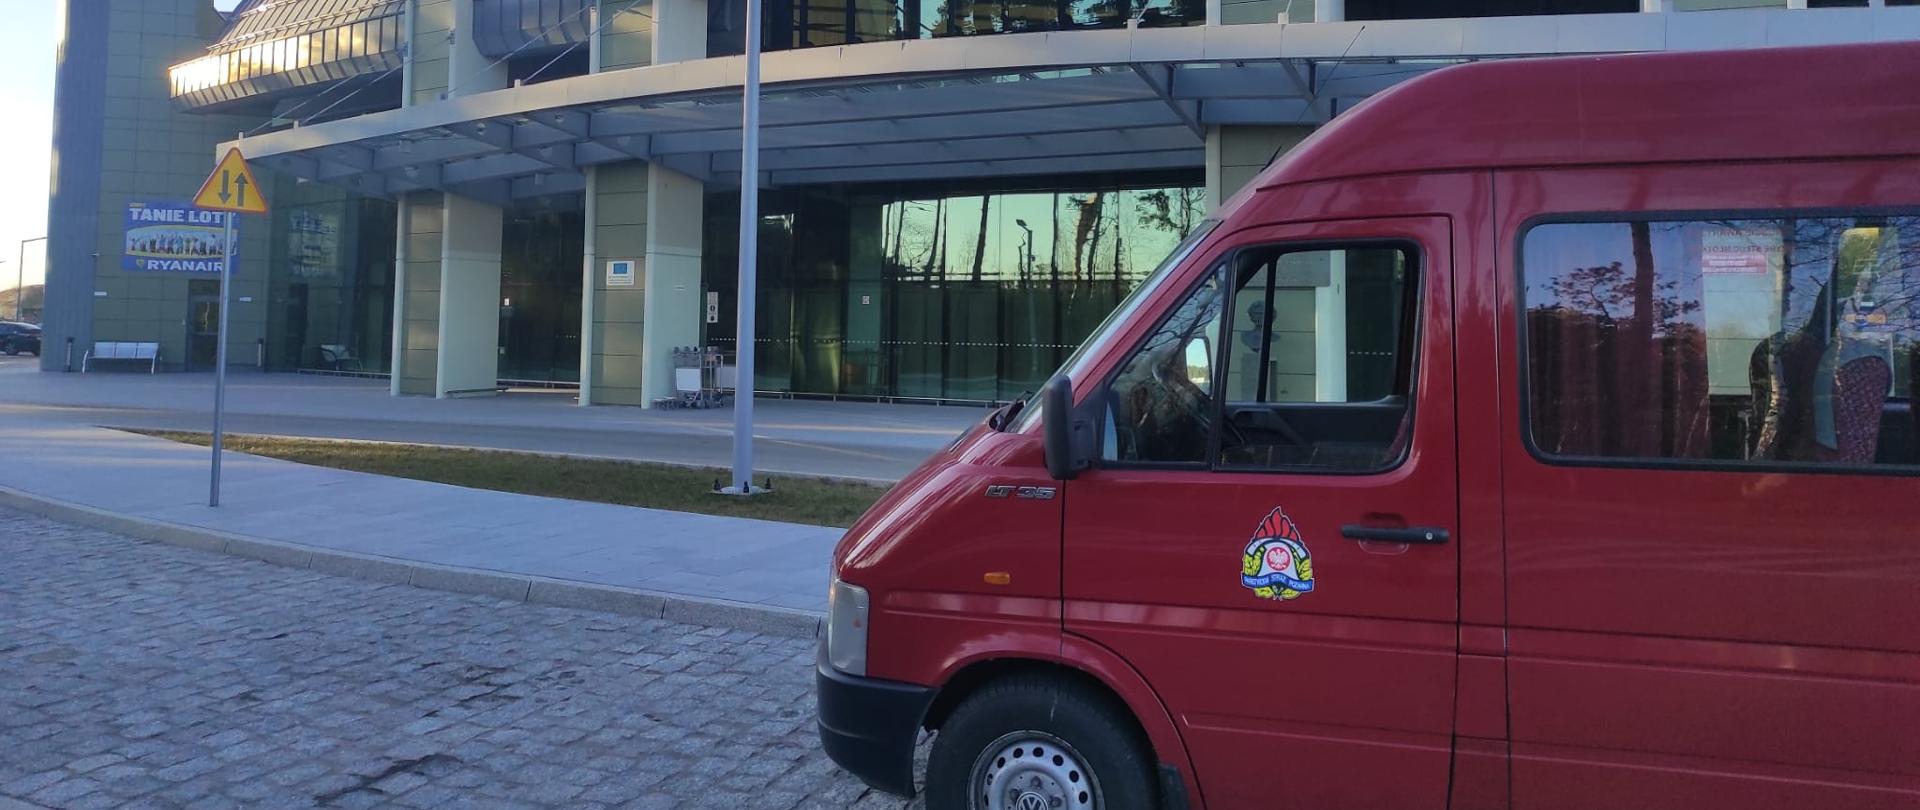 na pierwszym planie z lewej strony widać prawą przednią stronę busa czerwonego z herbem PSP na drzwiach kierowcy. W tle budynek dworca lotniczego w Bydgoszczy. Szara elewacja, w środkowej części budynku szary napis Bydgoszcz.